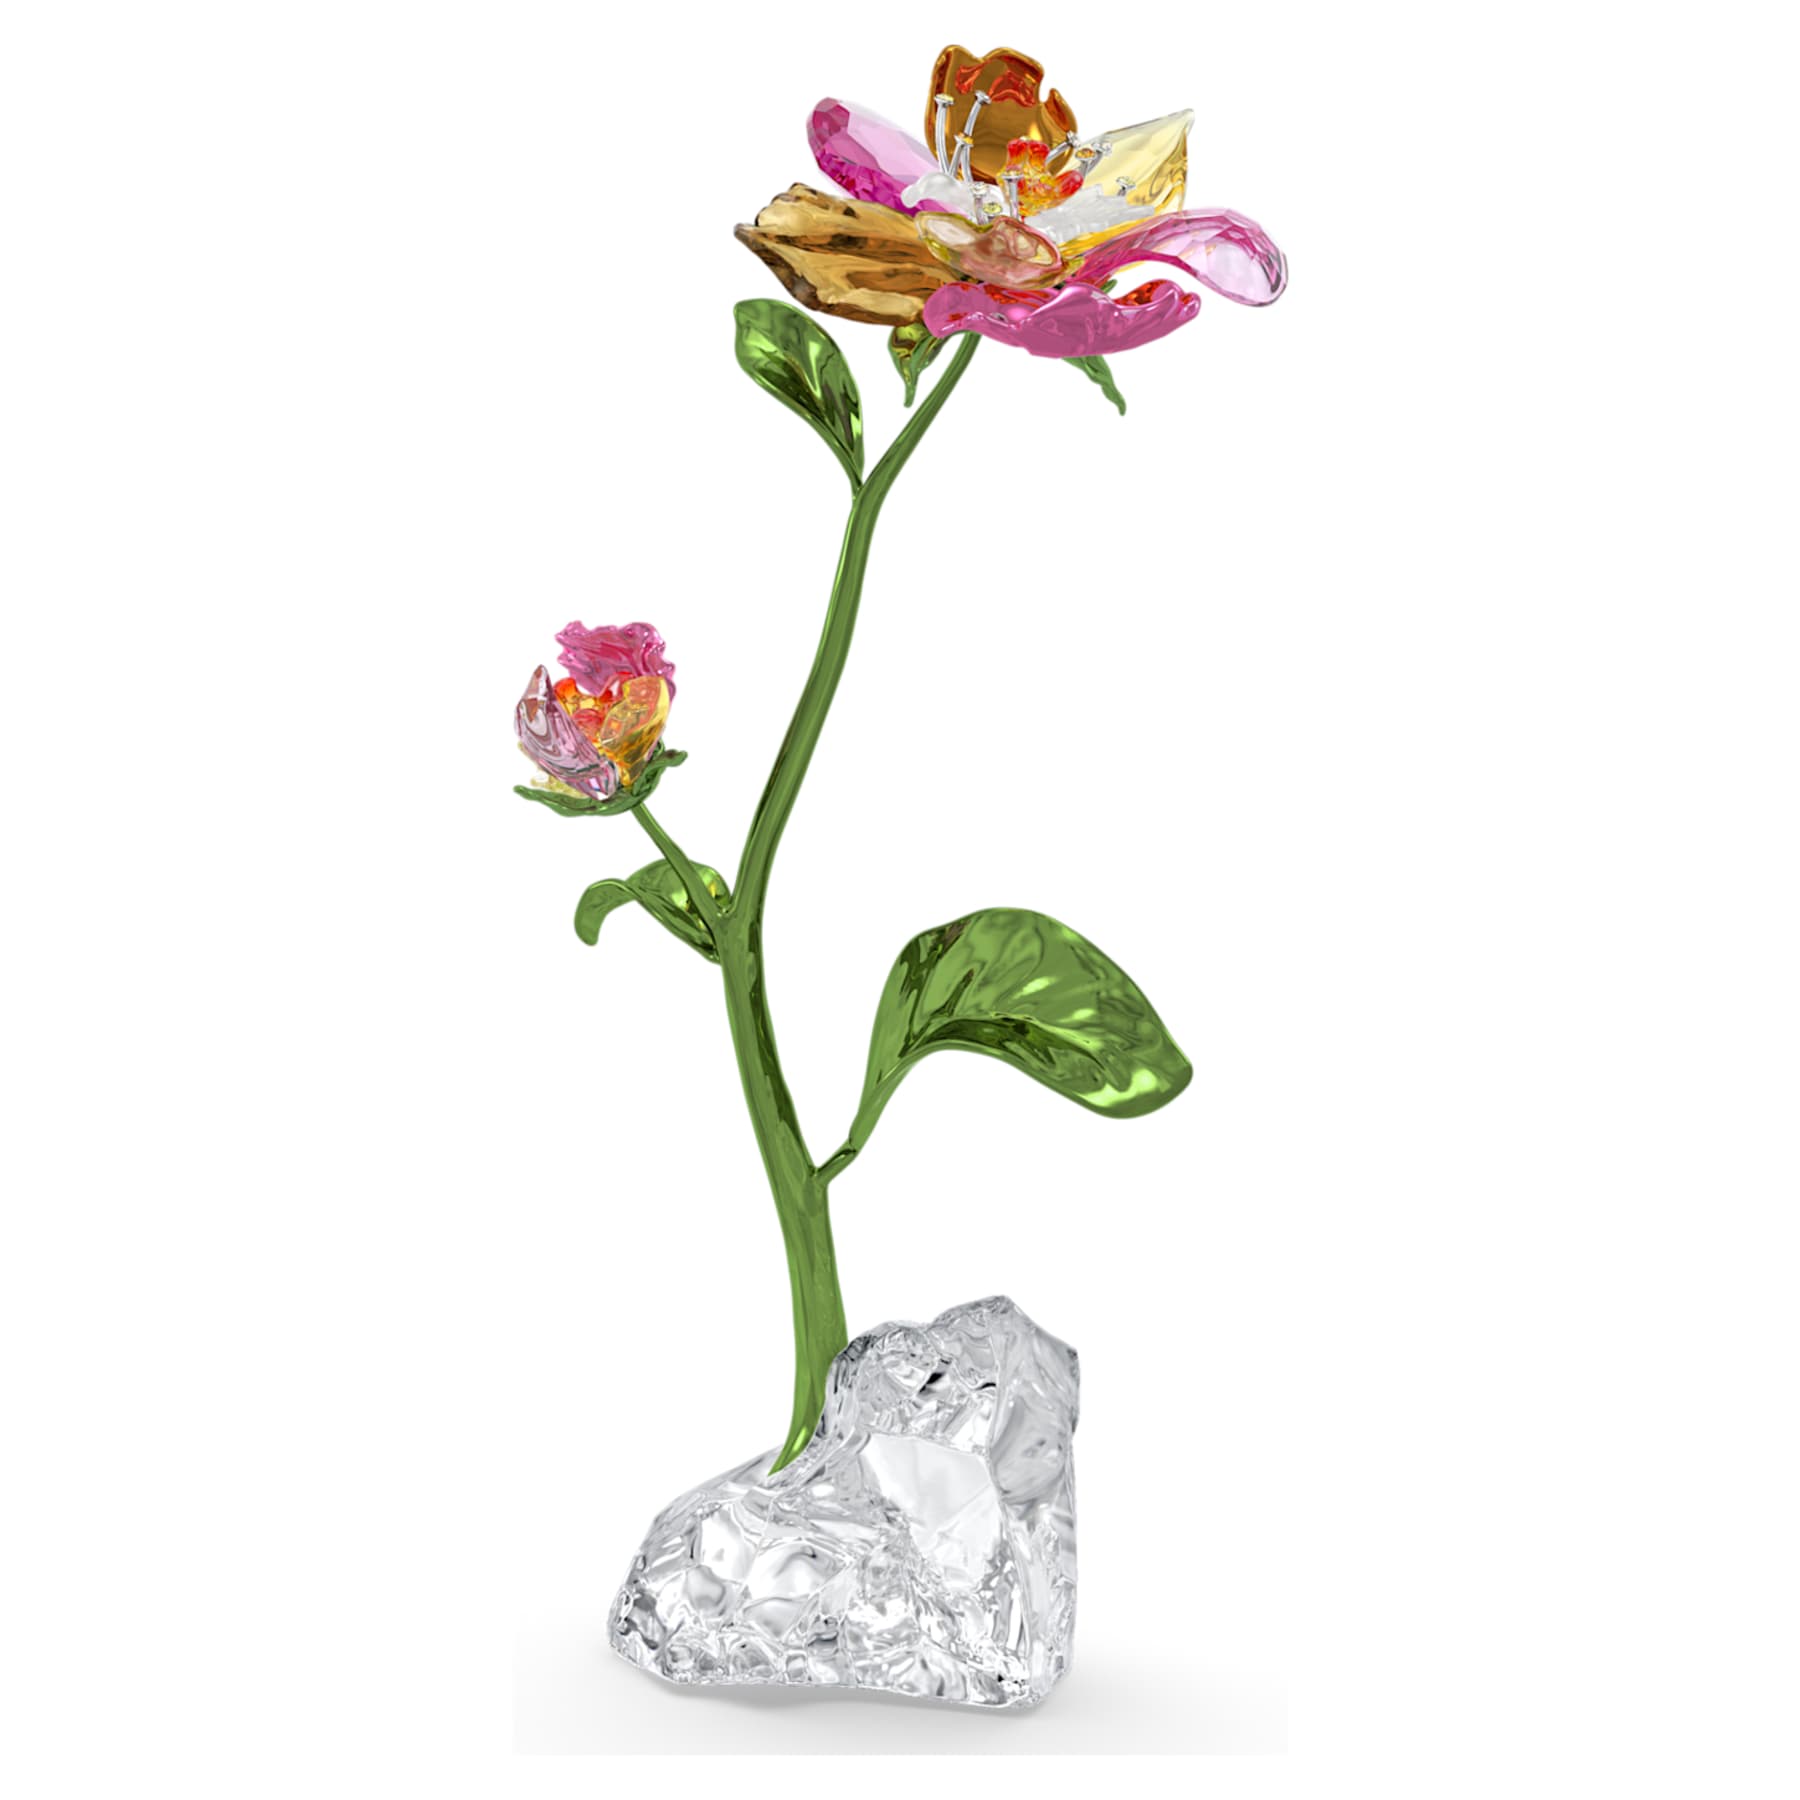 Idyllia - Flower - Figurine - Swarovski